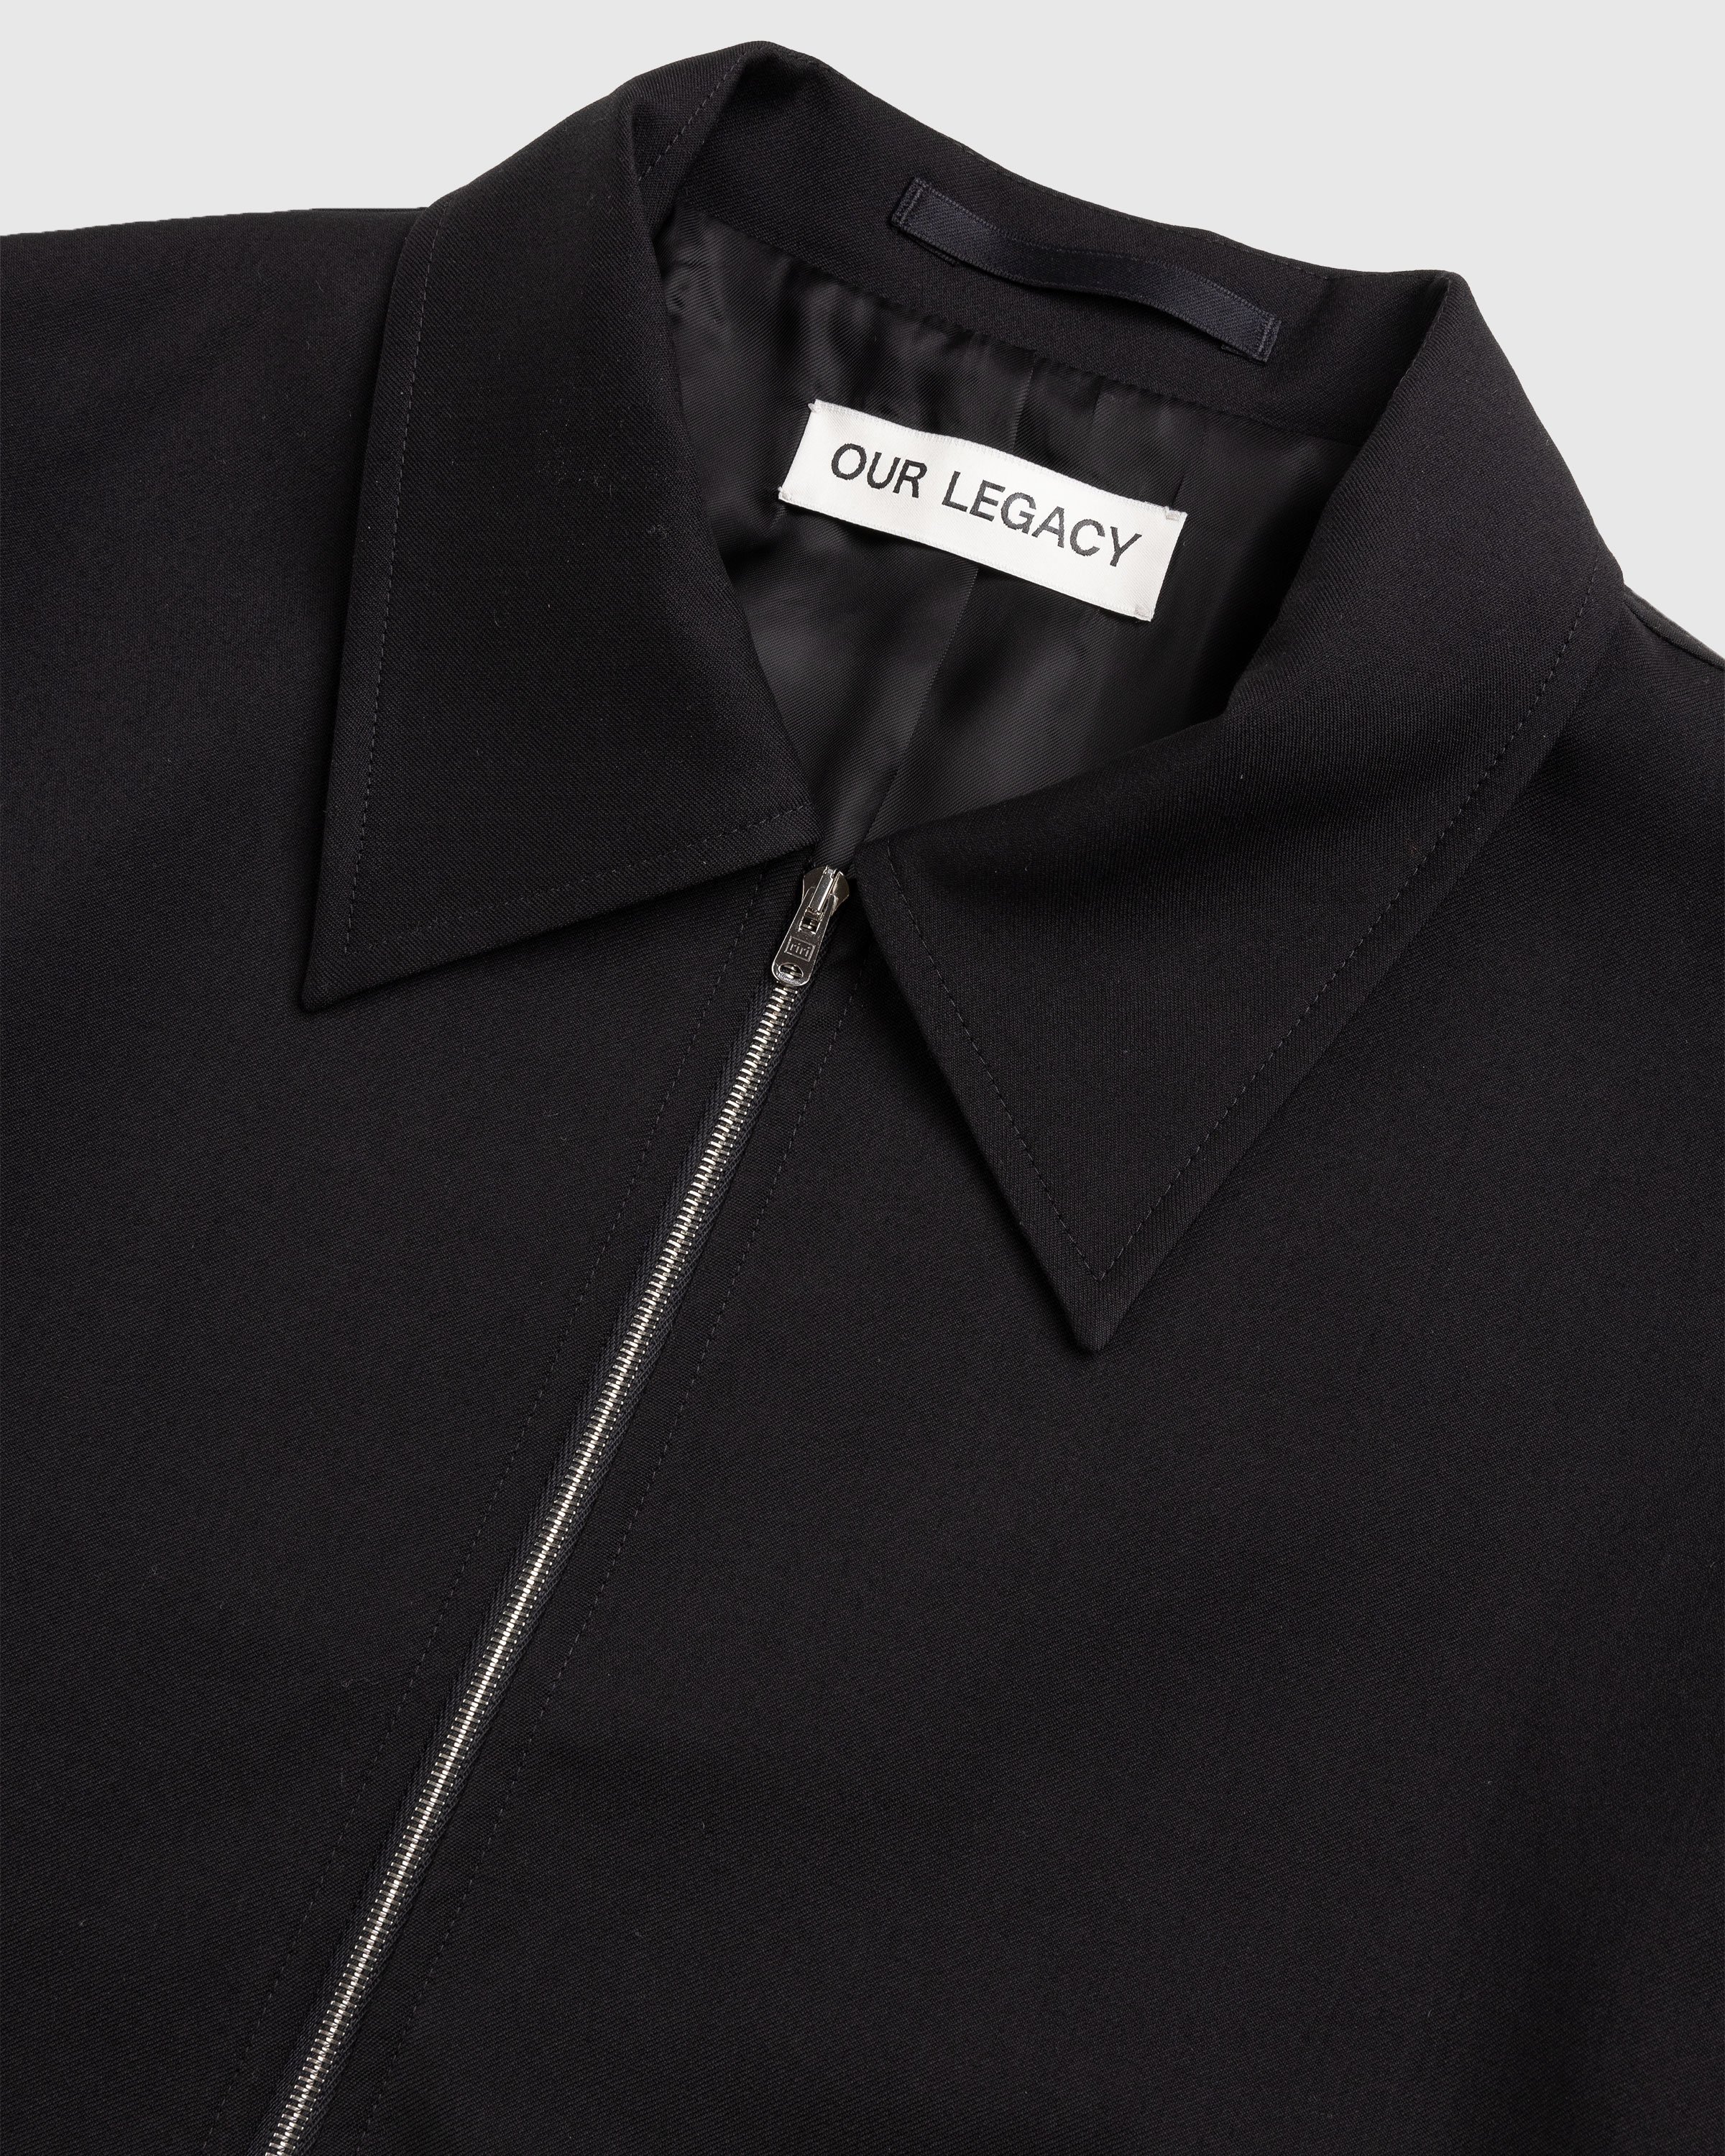 Our Legacy - MINI JACKET Black - Clothing - Black - Image 6